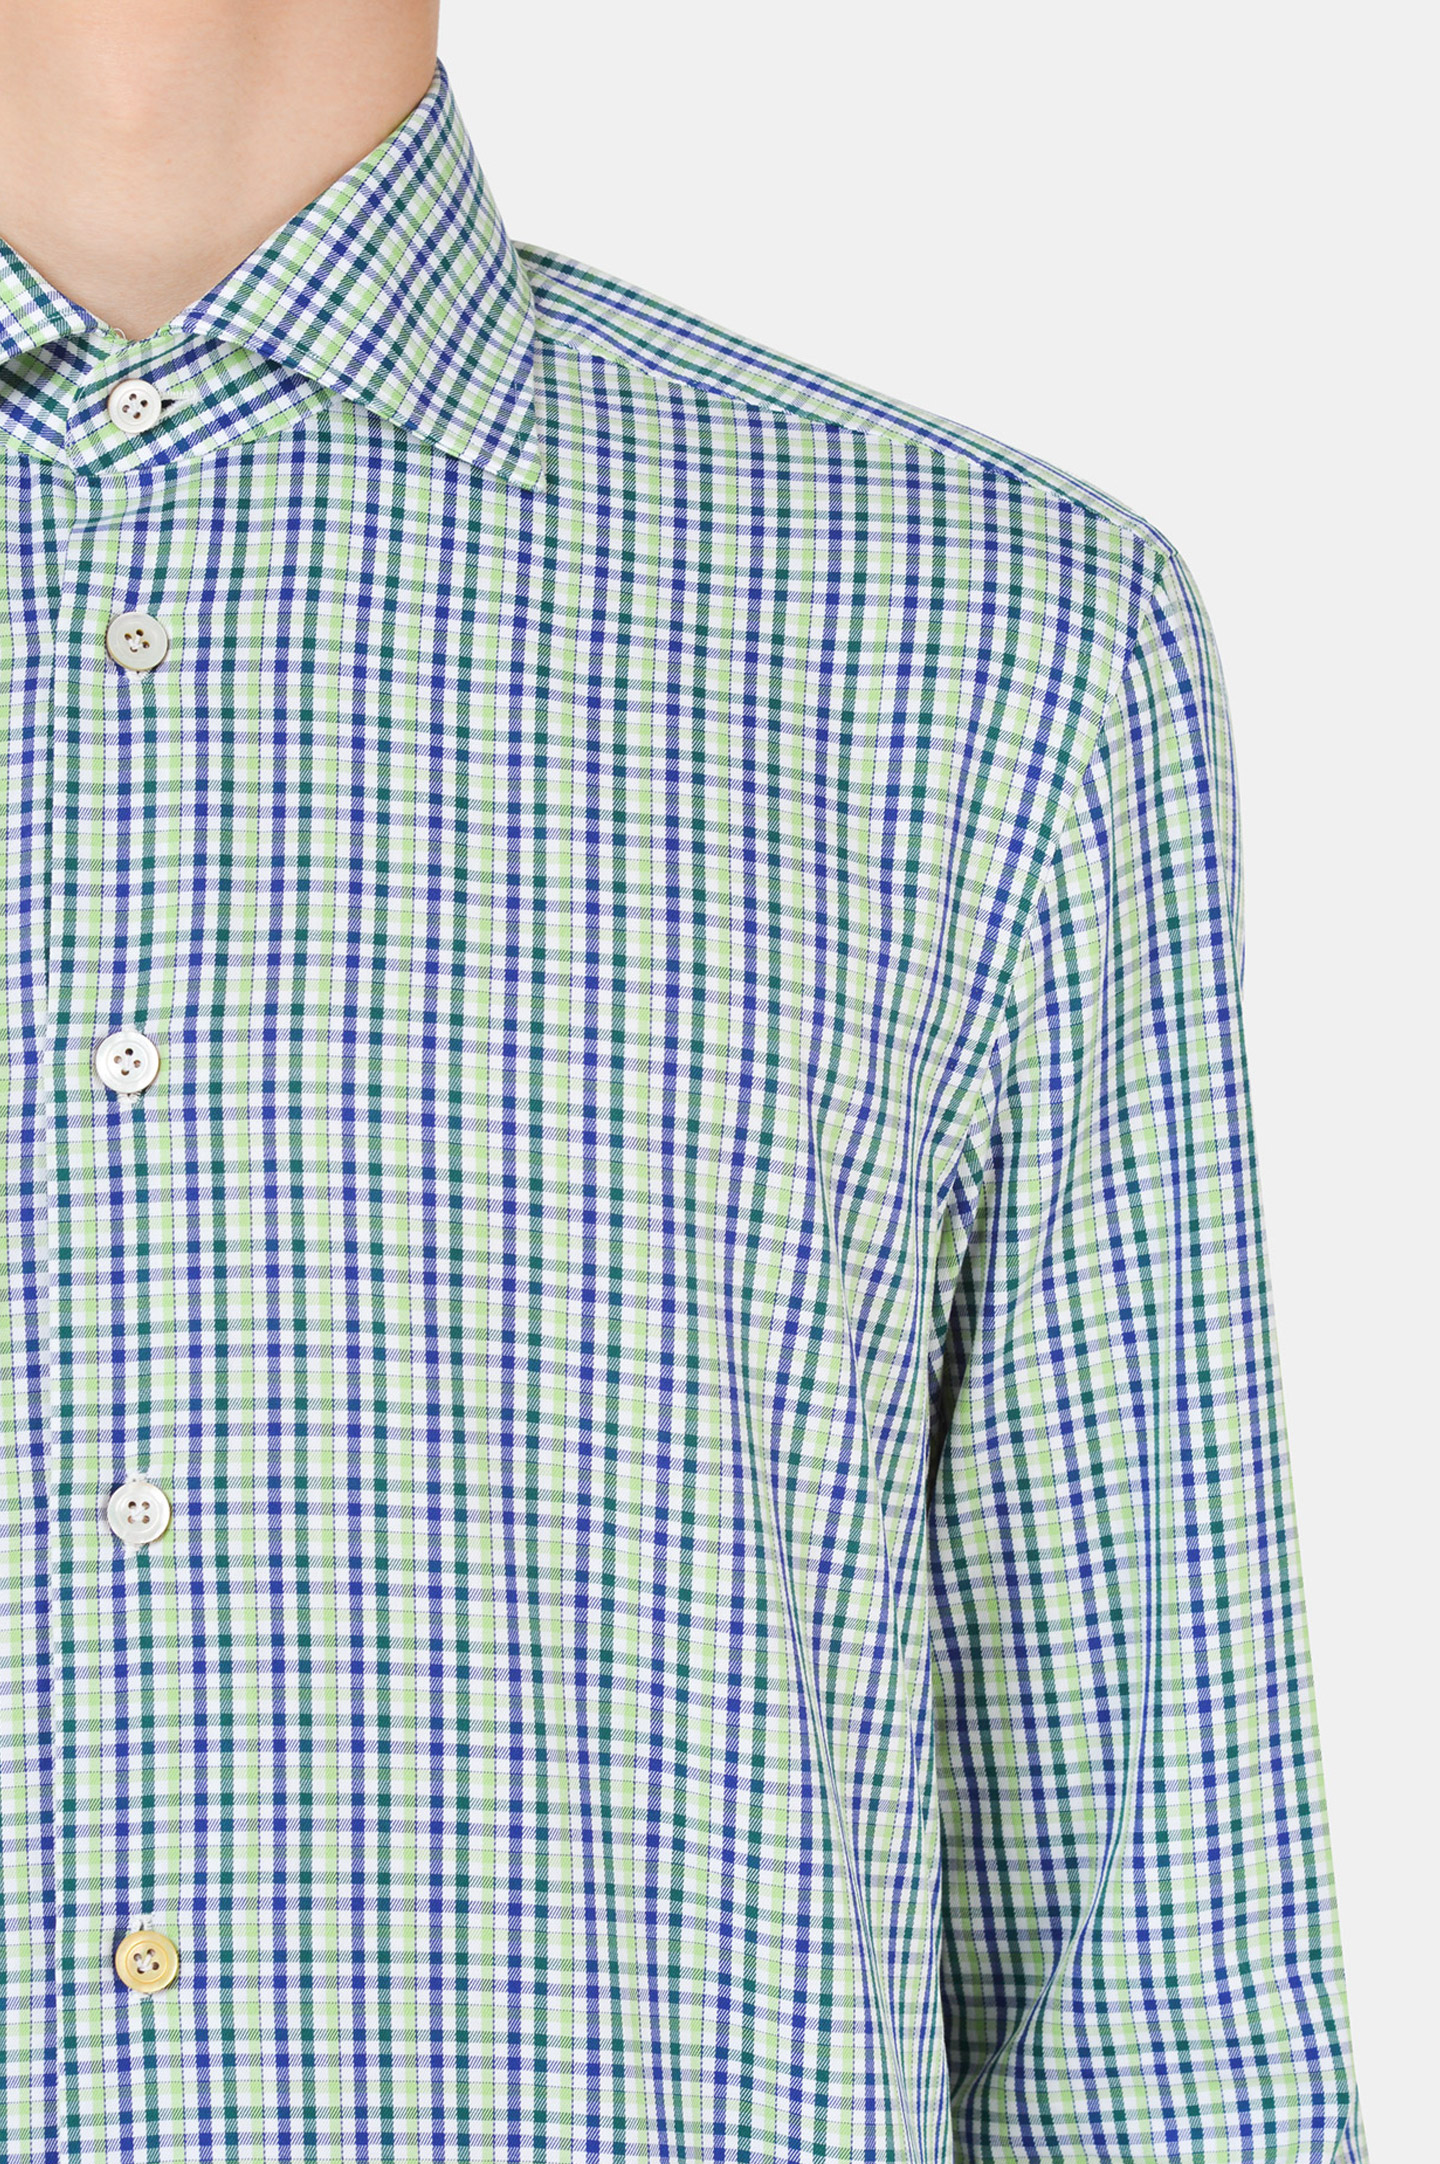 Рубашка KITON UCCH074353, цвет: Зеленый, Мужской